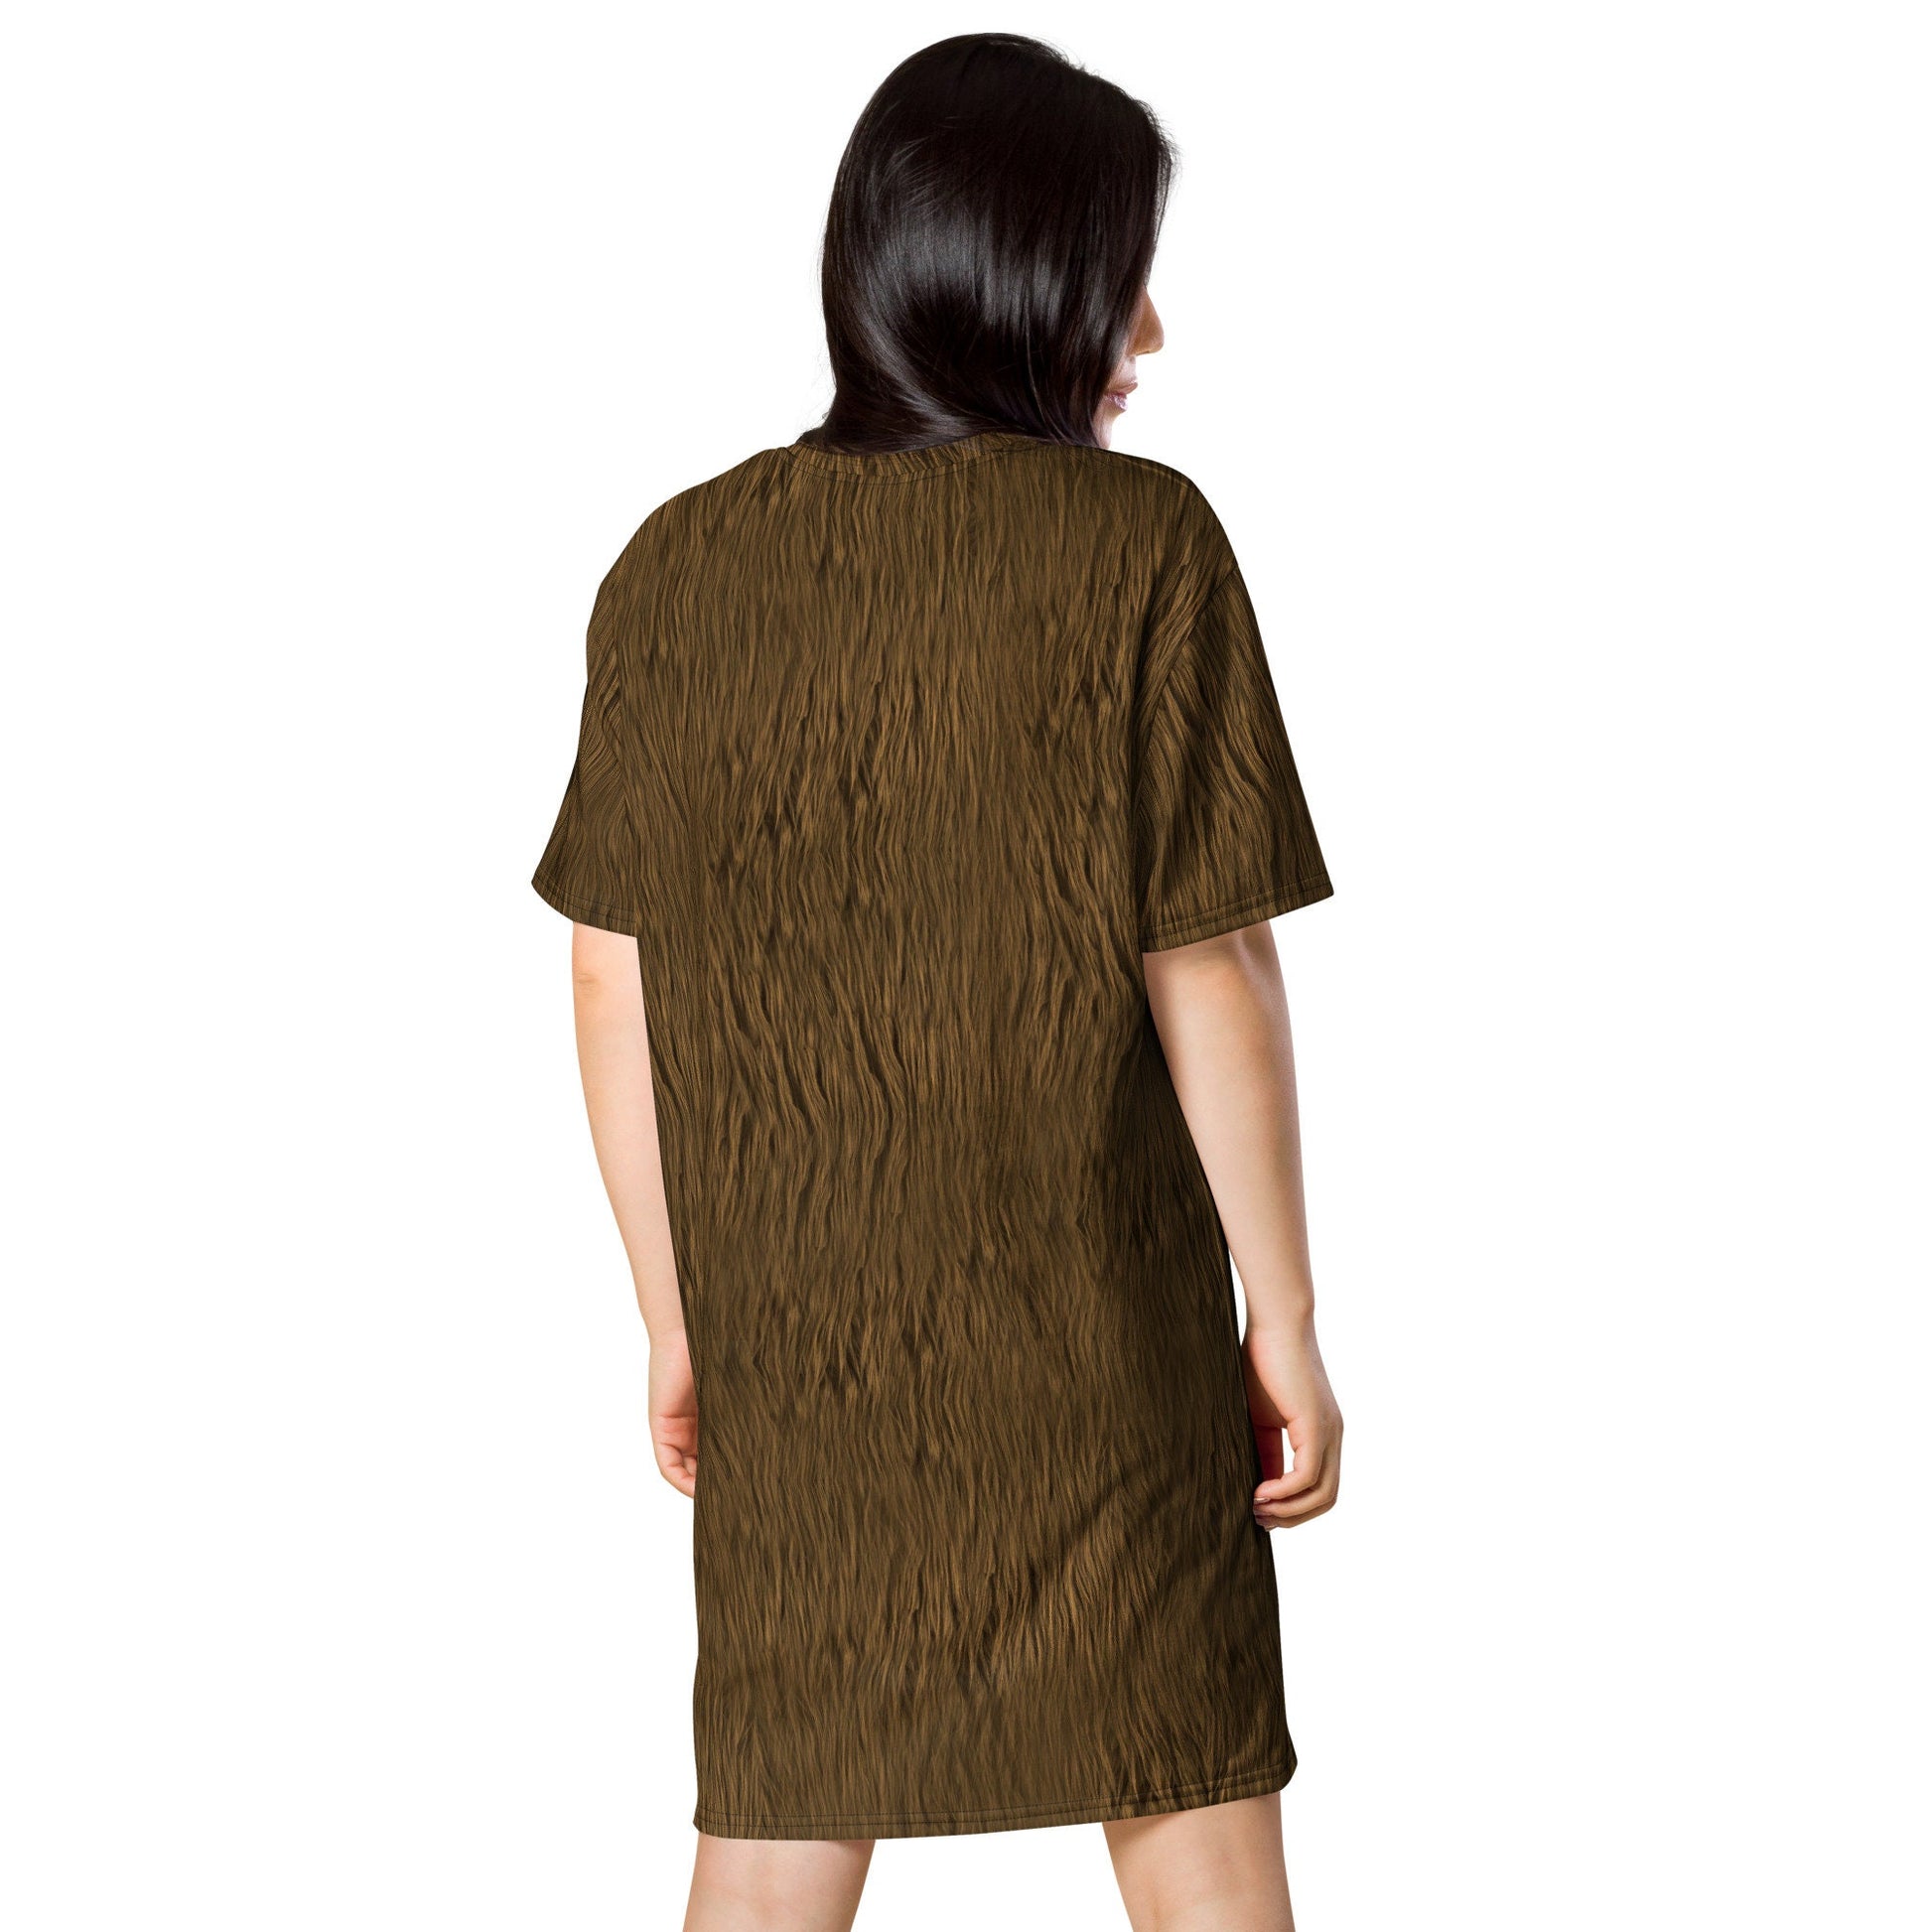 Ewok Inspired T-shirt dress